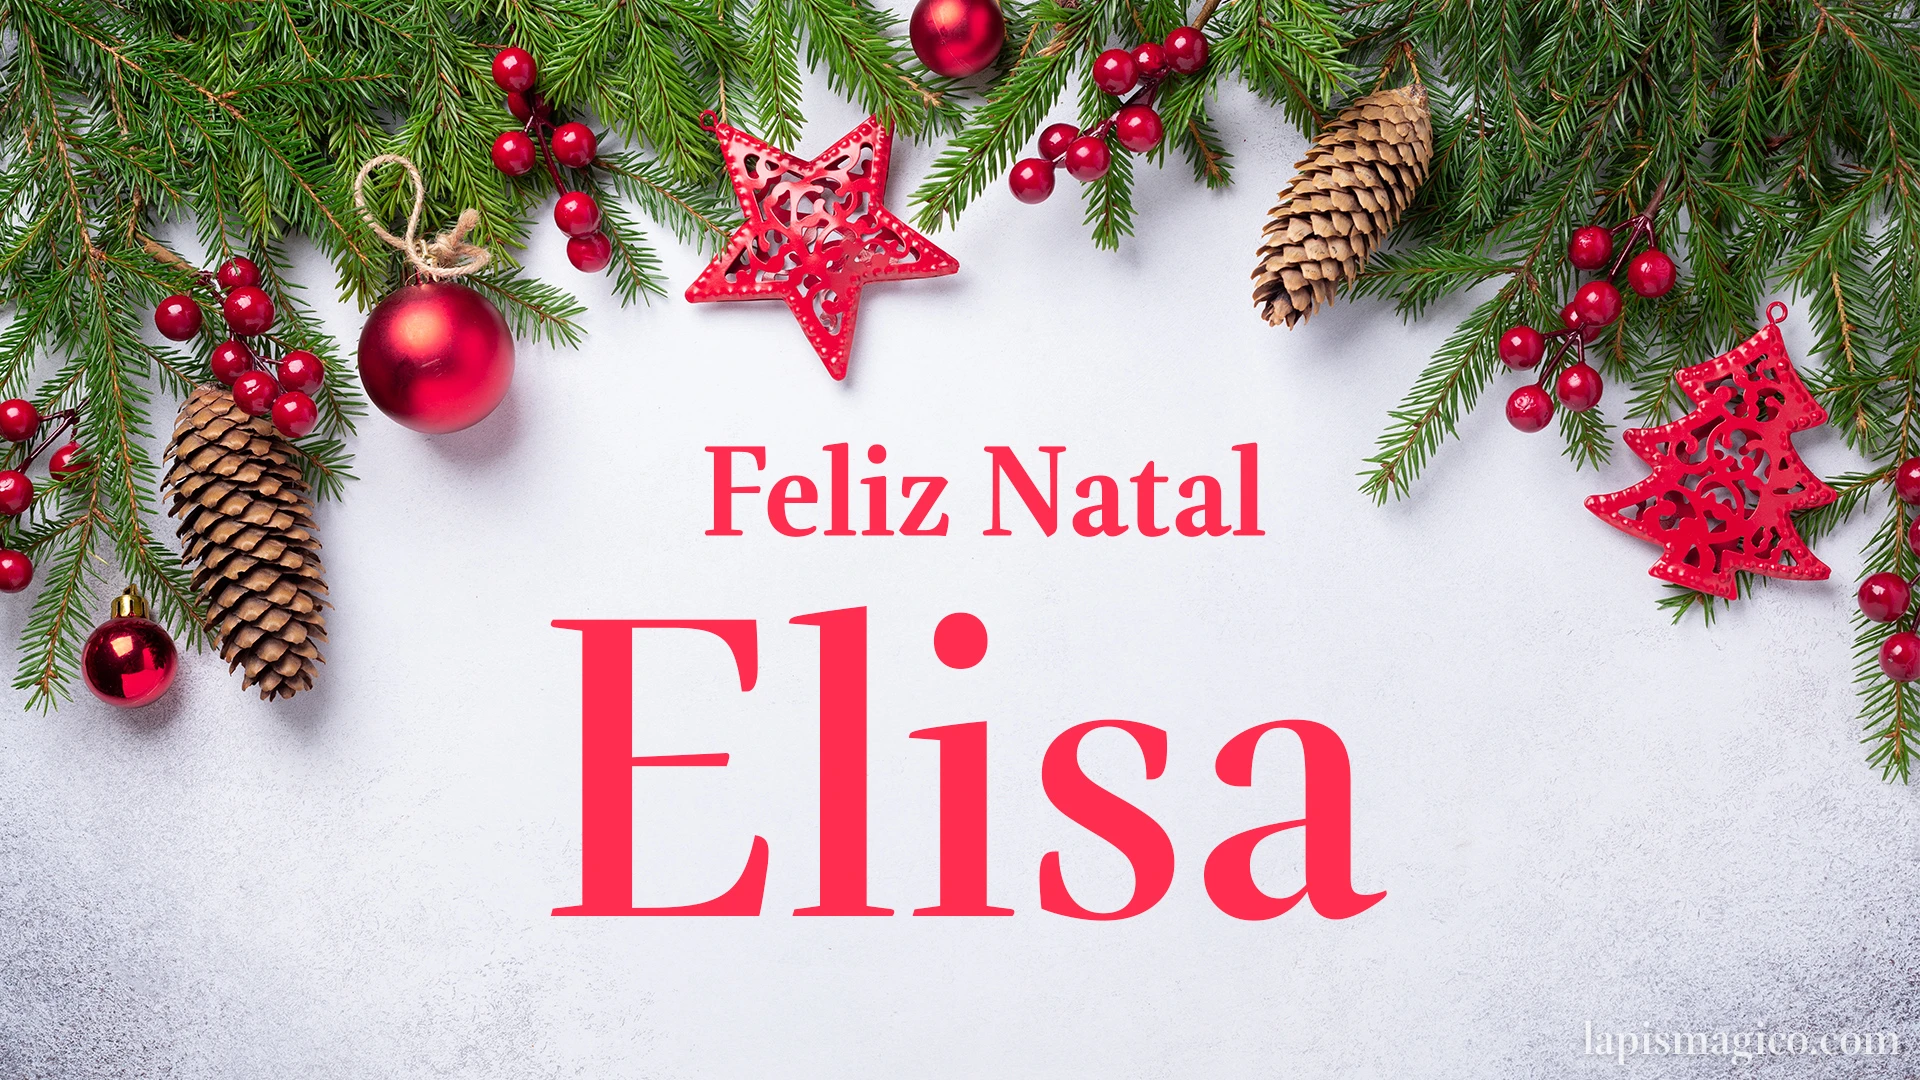 Oh Elisa, cinco postais de Feliz Natal Postal com o teu nome